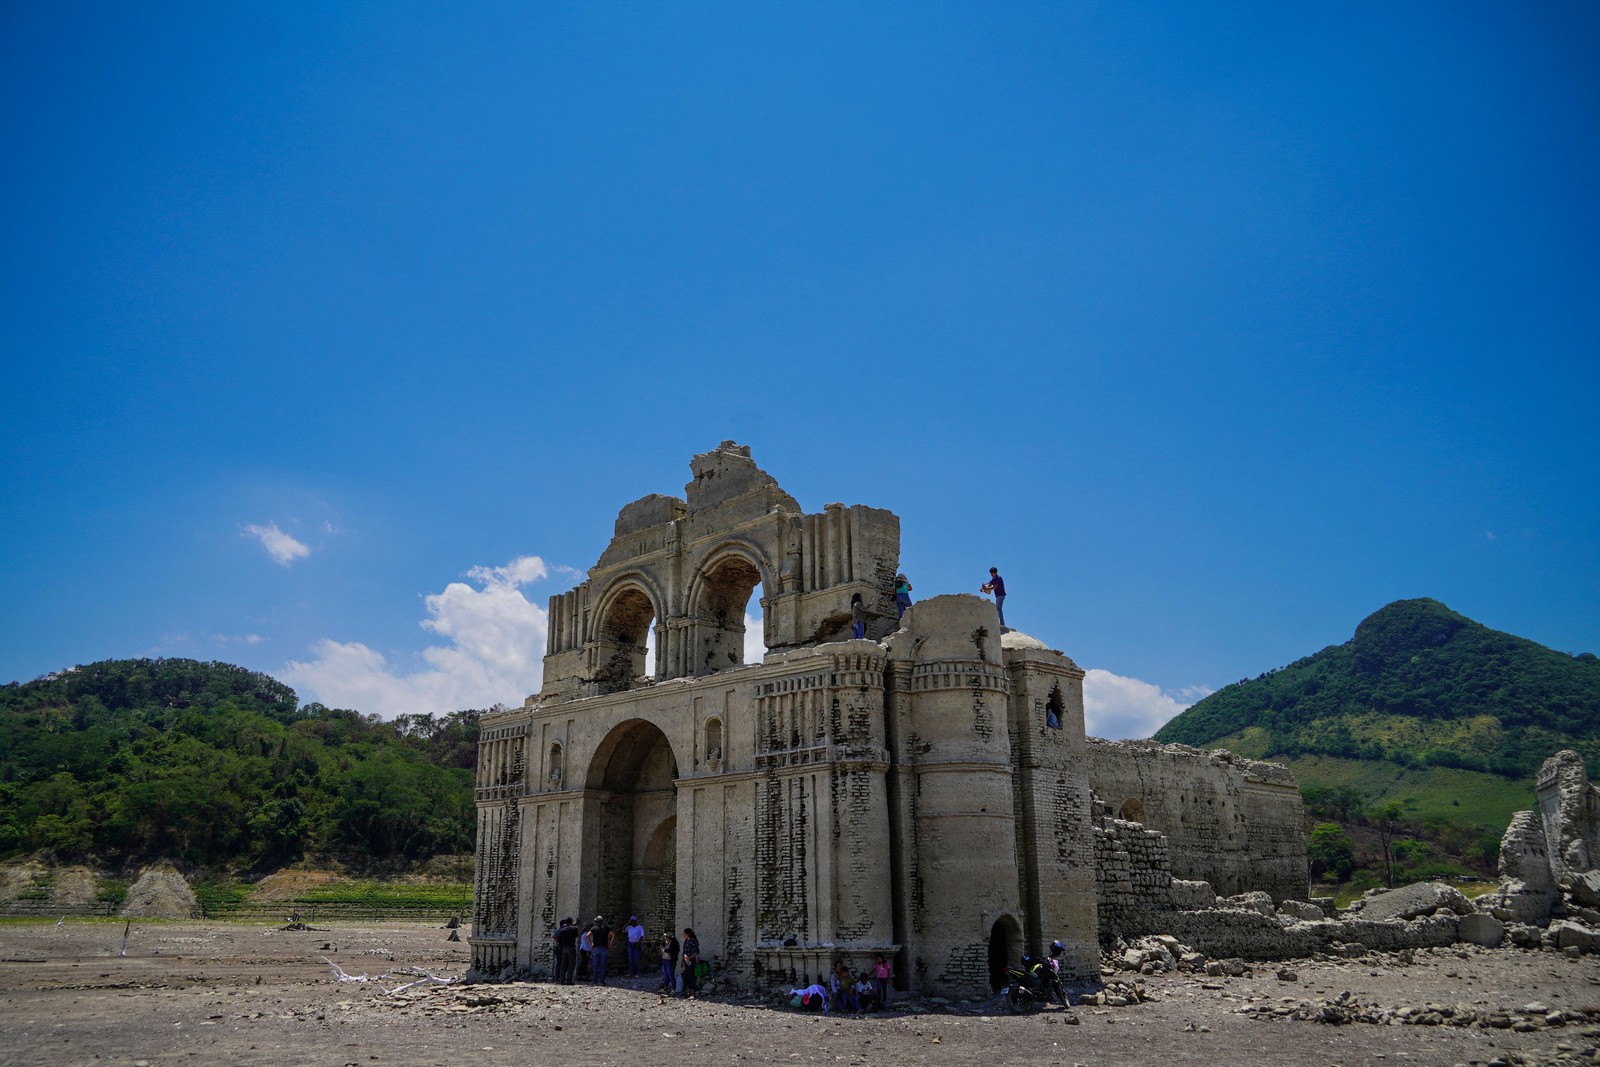 Igreja do século XVI estava submersa, mas ficou exposta devido à seca. — Foto: RAUL VERA / AFP